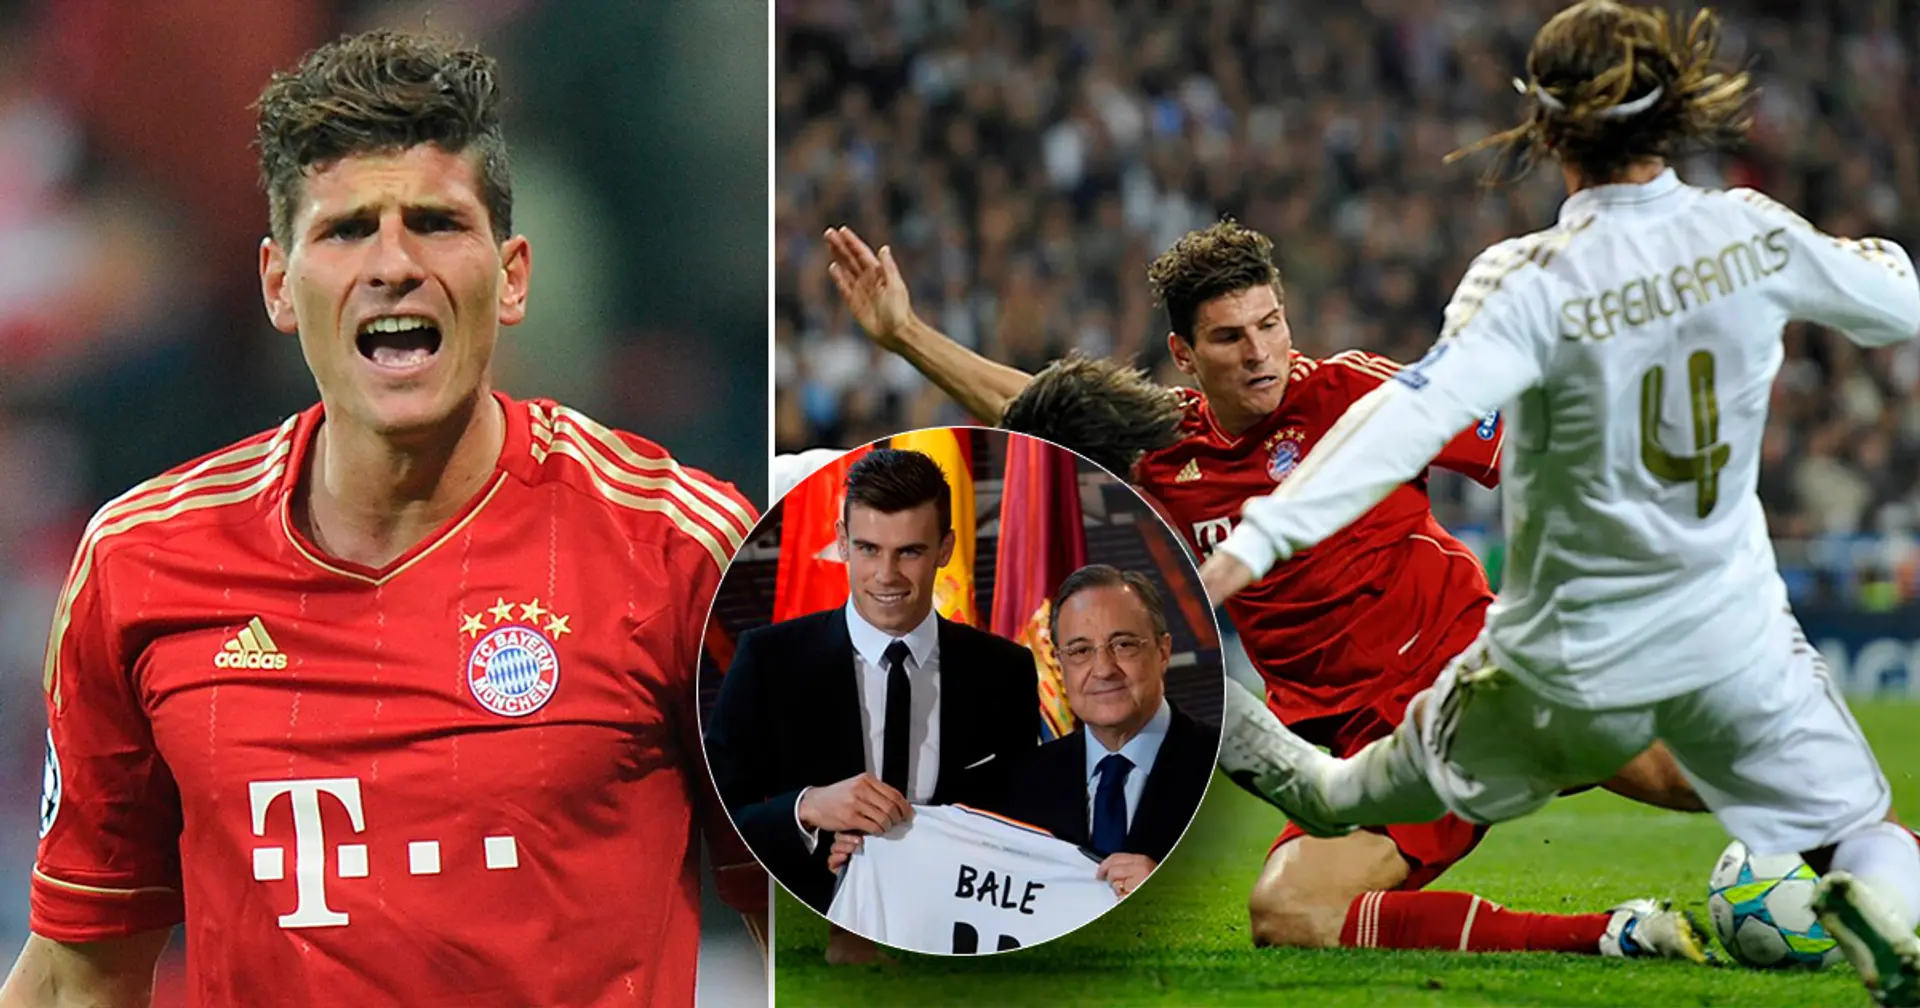 Mario Gómez enthüllt, dass er nach dem UCL-Sieg mit dem FC Bayern 2013 Real Madrid absagte